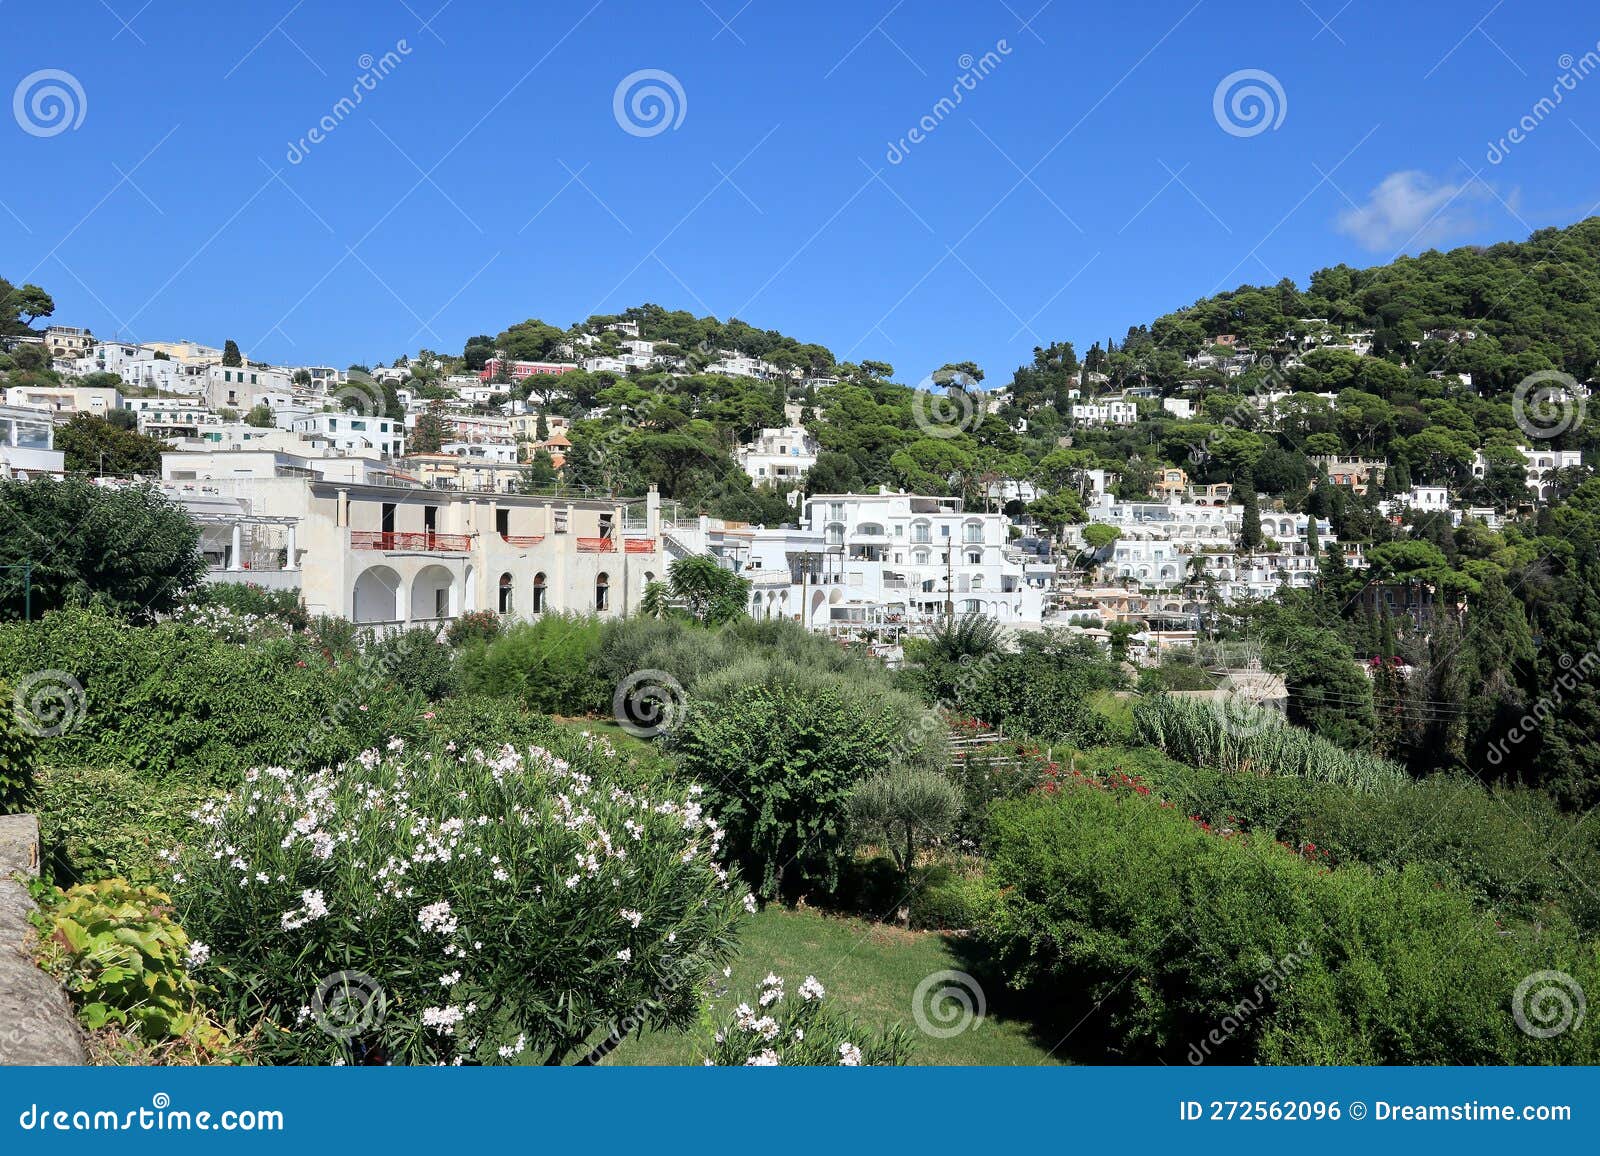 luxury homes on steep hillsides of capri